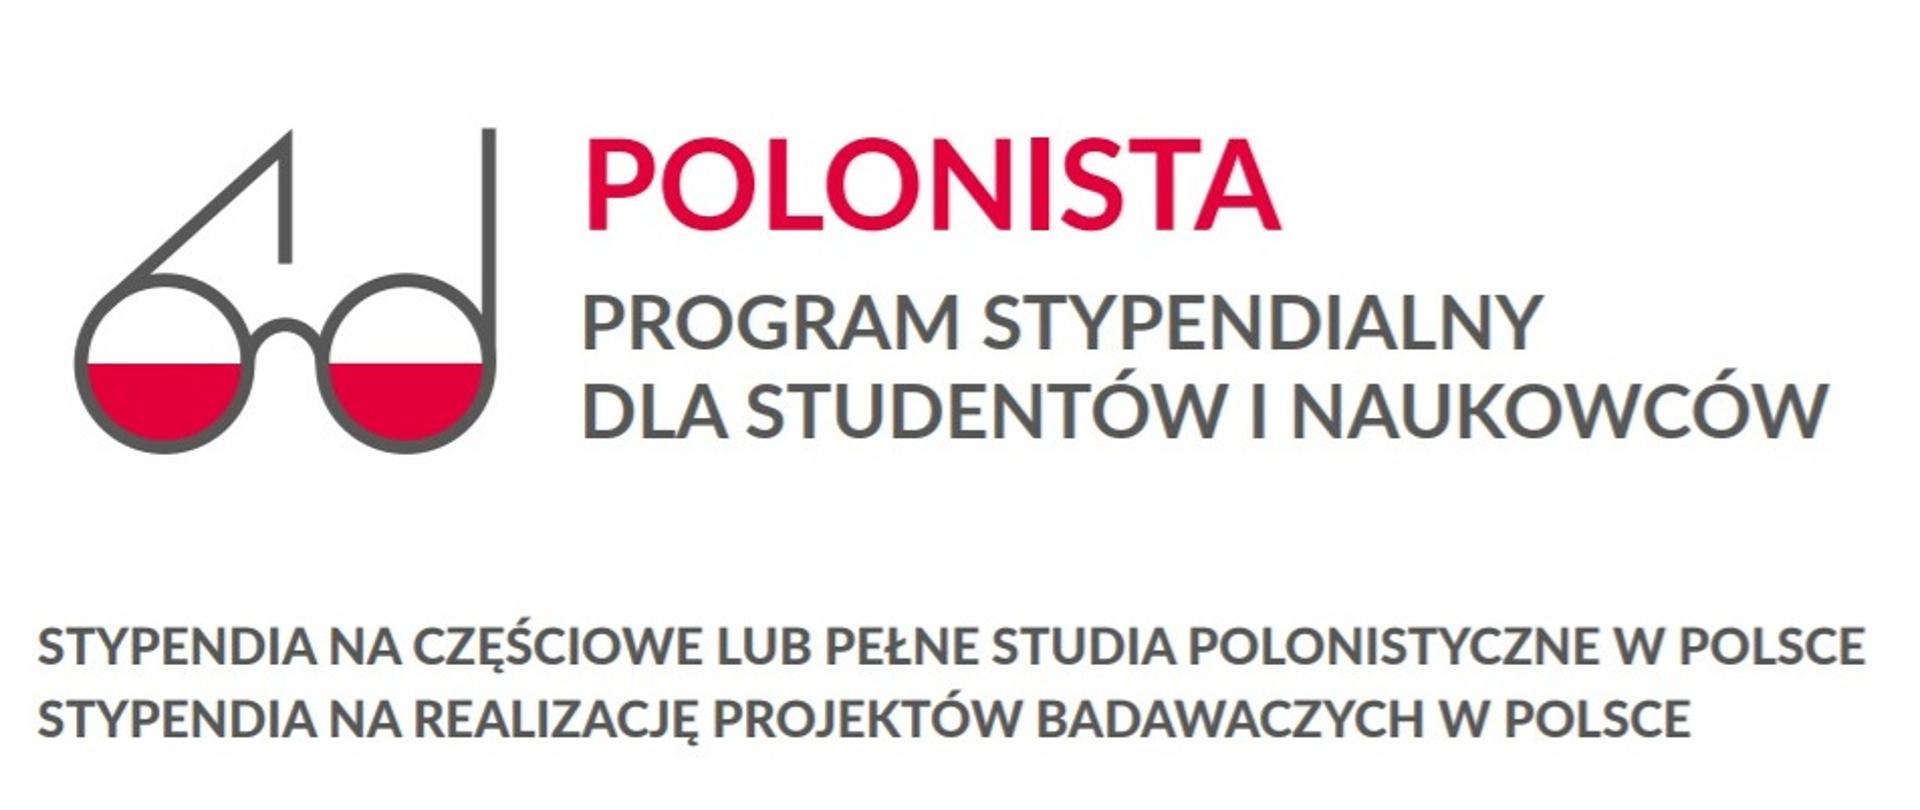 POLONISTA_2020